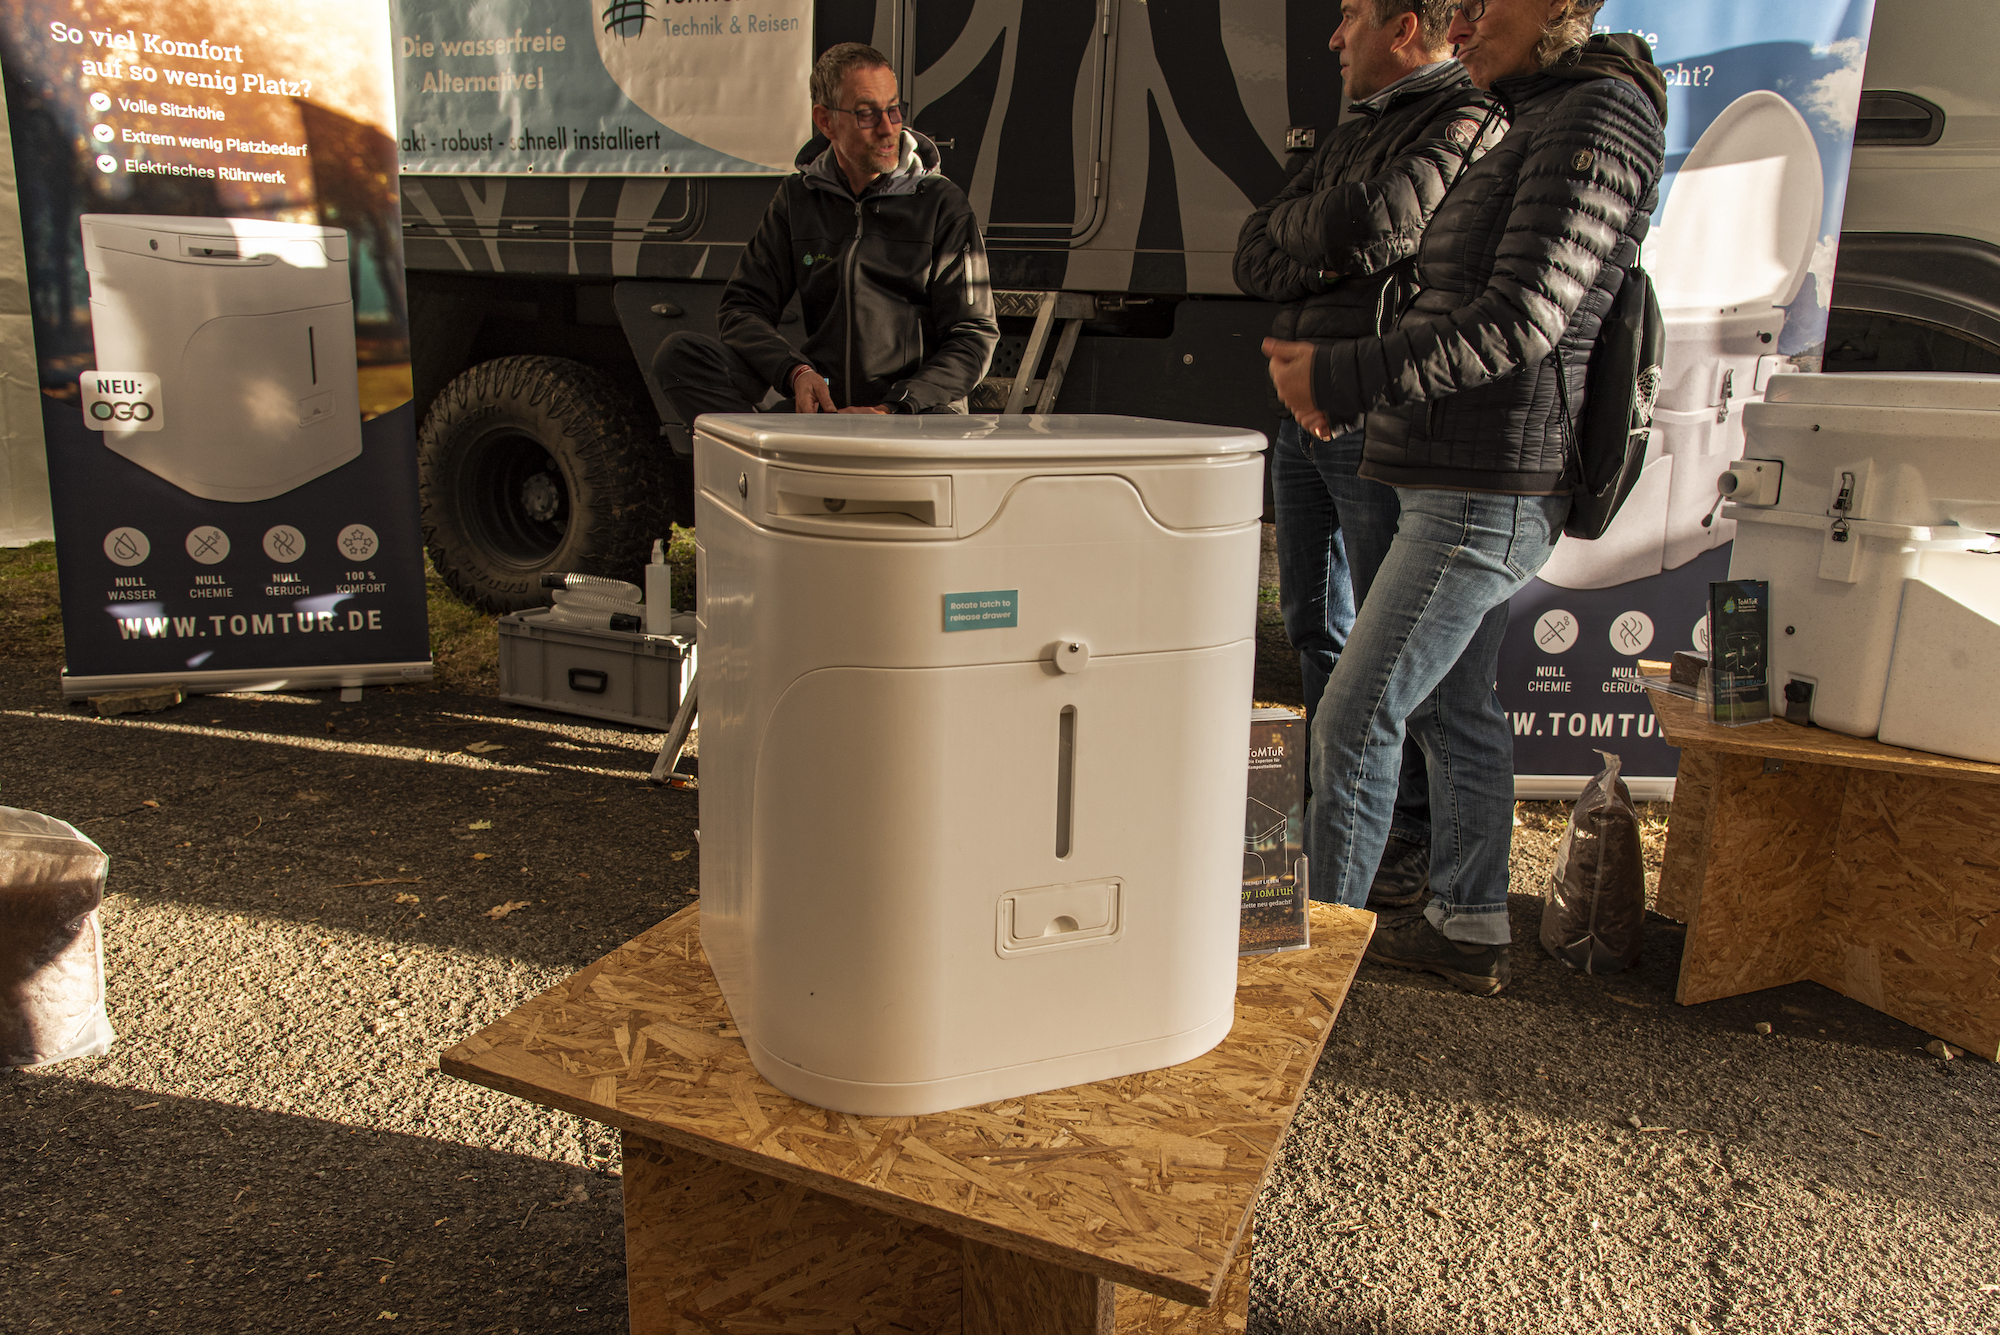 Die neue Kompost-Toilette „Ogo“ von Tomtur ist nicht nur kleiner, sondern optisch auch gefälliger als die Natures Head. BU Tomtur-2 Gerührt wird jetzt elektrisch, der Feststoff-Behälter lässt sich nach vorne entnehmen, die Toilette bleibt wo sie ist.